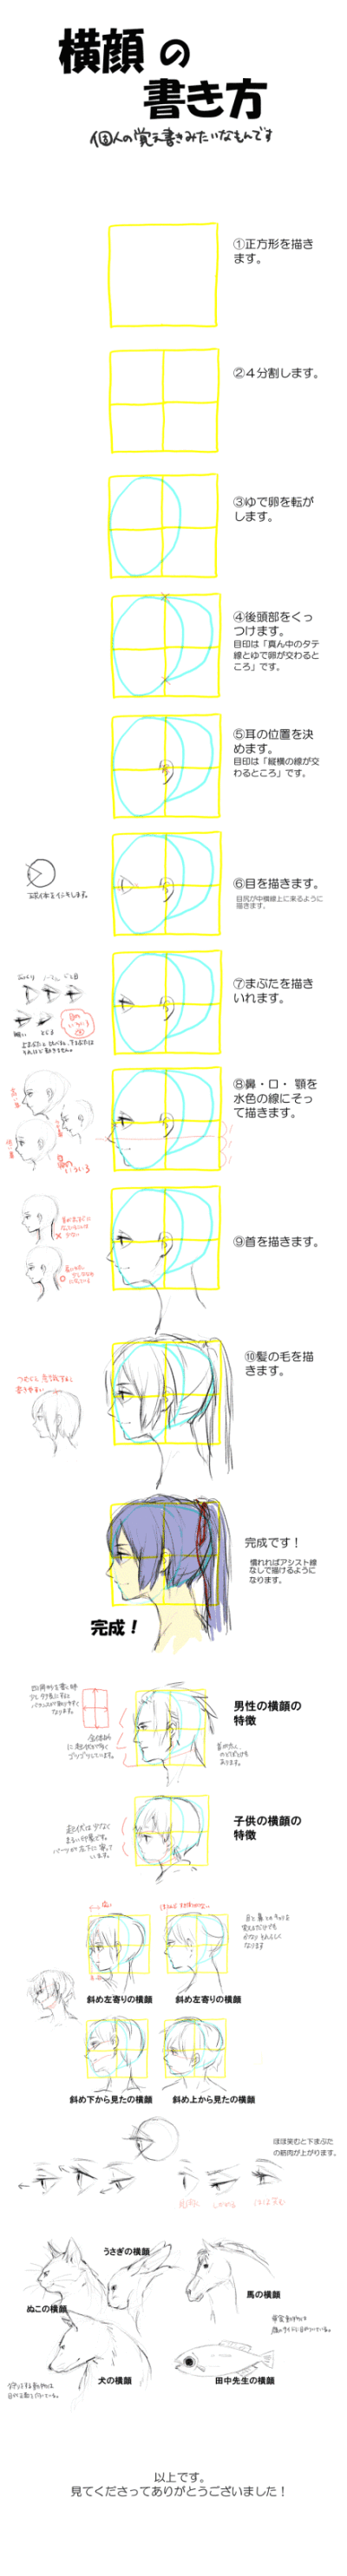 【【人体比例】:侧脸画法】 http://tcn/swenu7